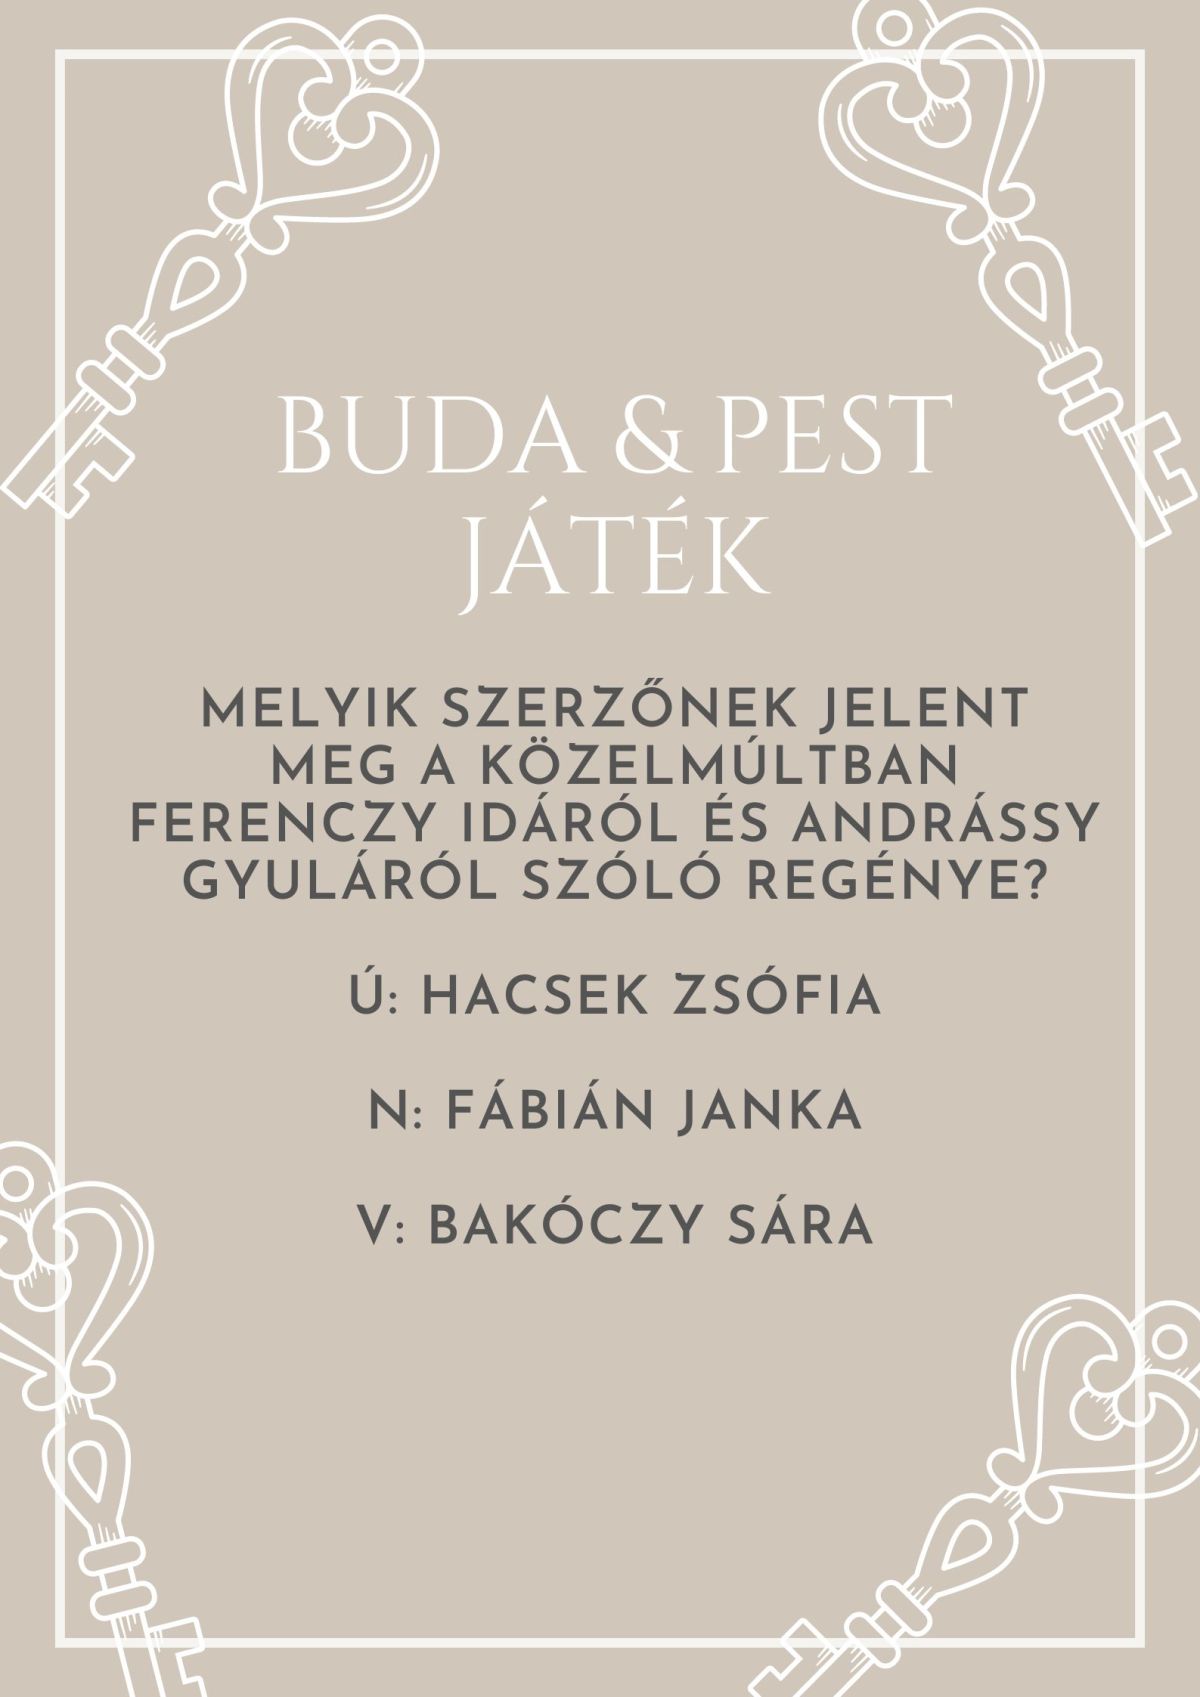 Buda & Pest játék – 15. kérdés